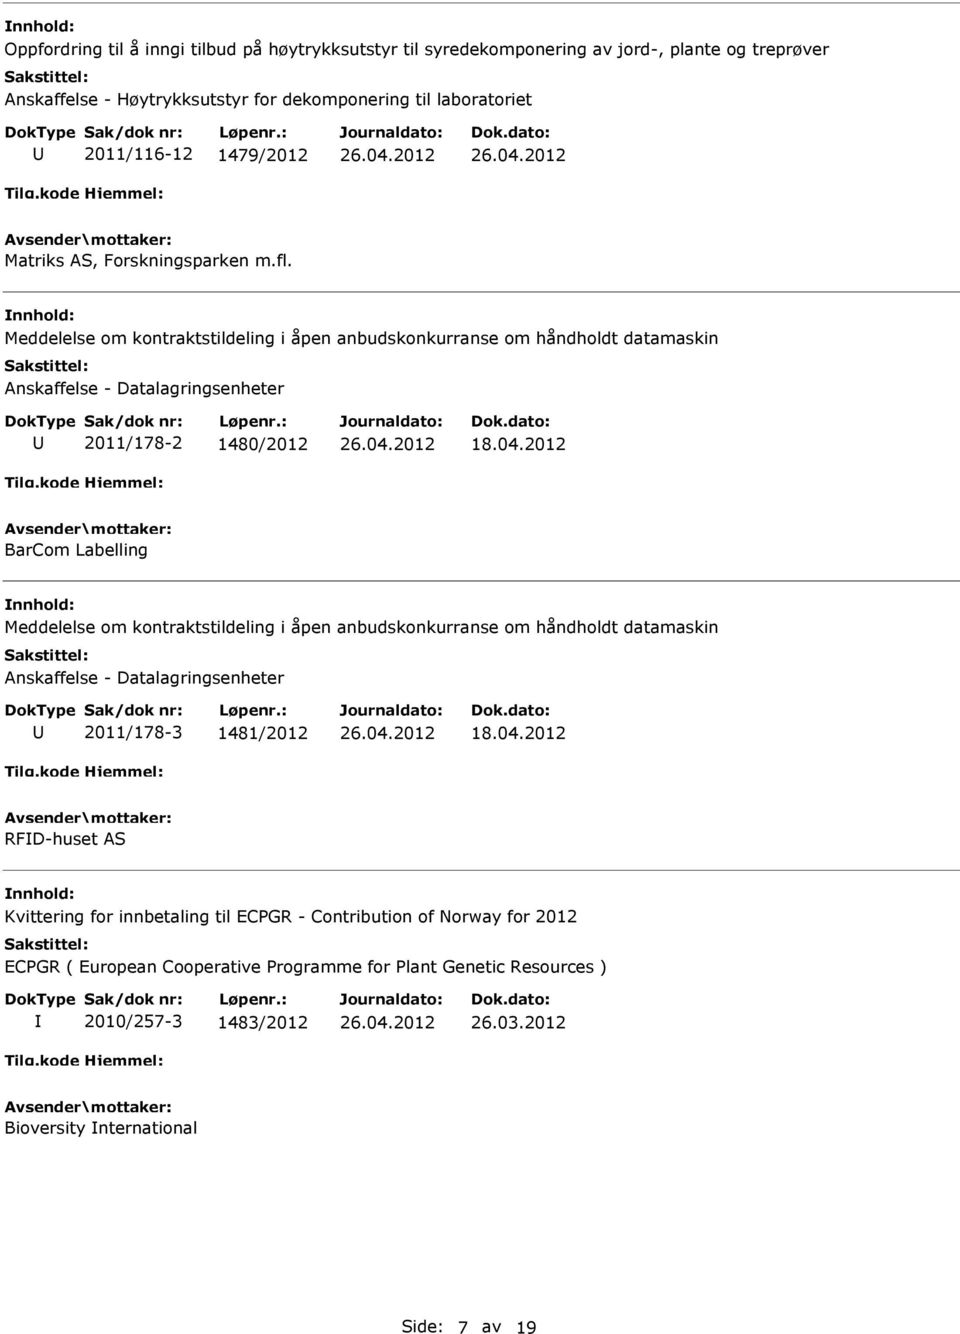 2012 BarCom Labelling Meddelelse om kontraktstildeling i åpen anbudskonkurranse om håndholdt datamaskin Anskaffelse - Datalagringsenheter 2011/178-3 1481/2012 18.04.